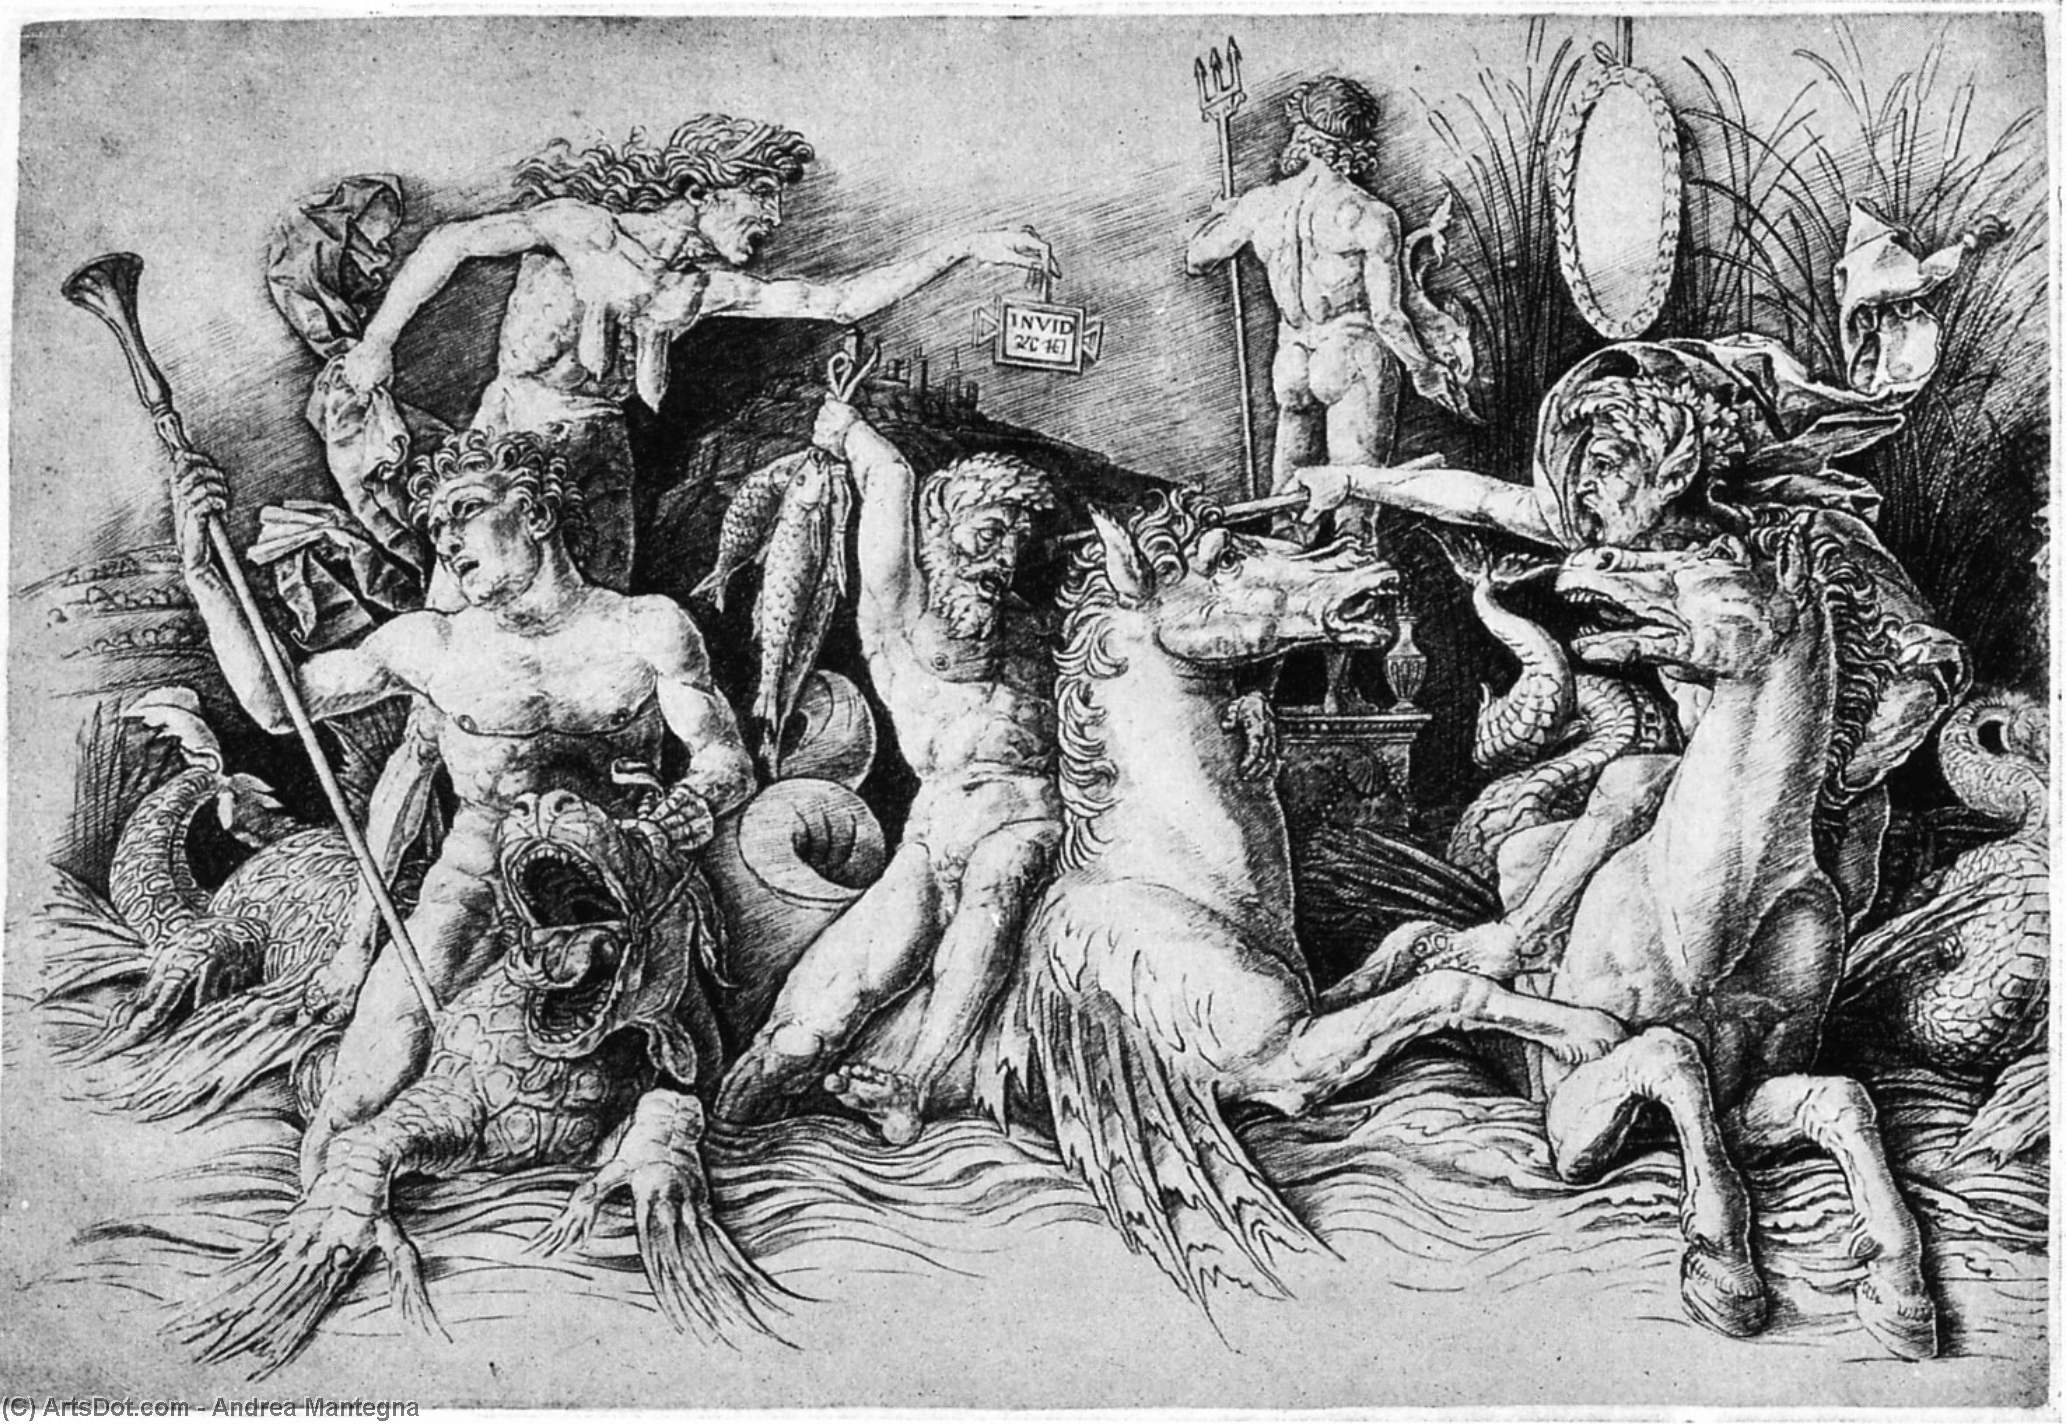 WikiOO.org - Encyclopedia of Fine Arts - Lukisan, Artwork Andrea Mantegna - Battle of Two Sea Monsters